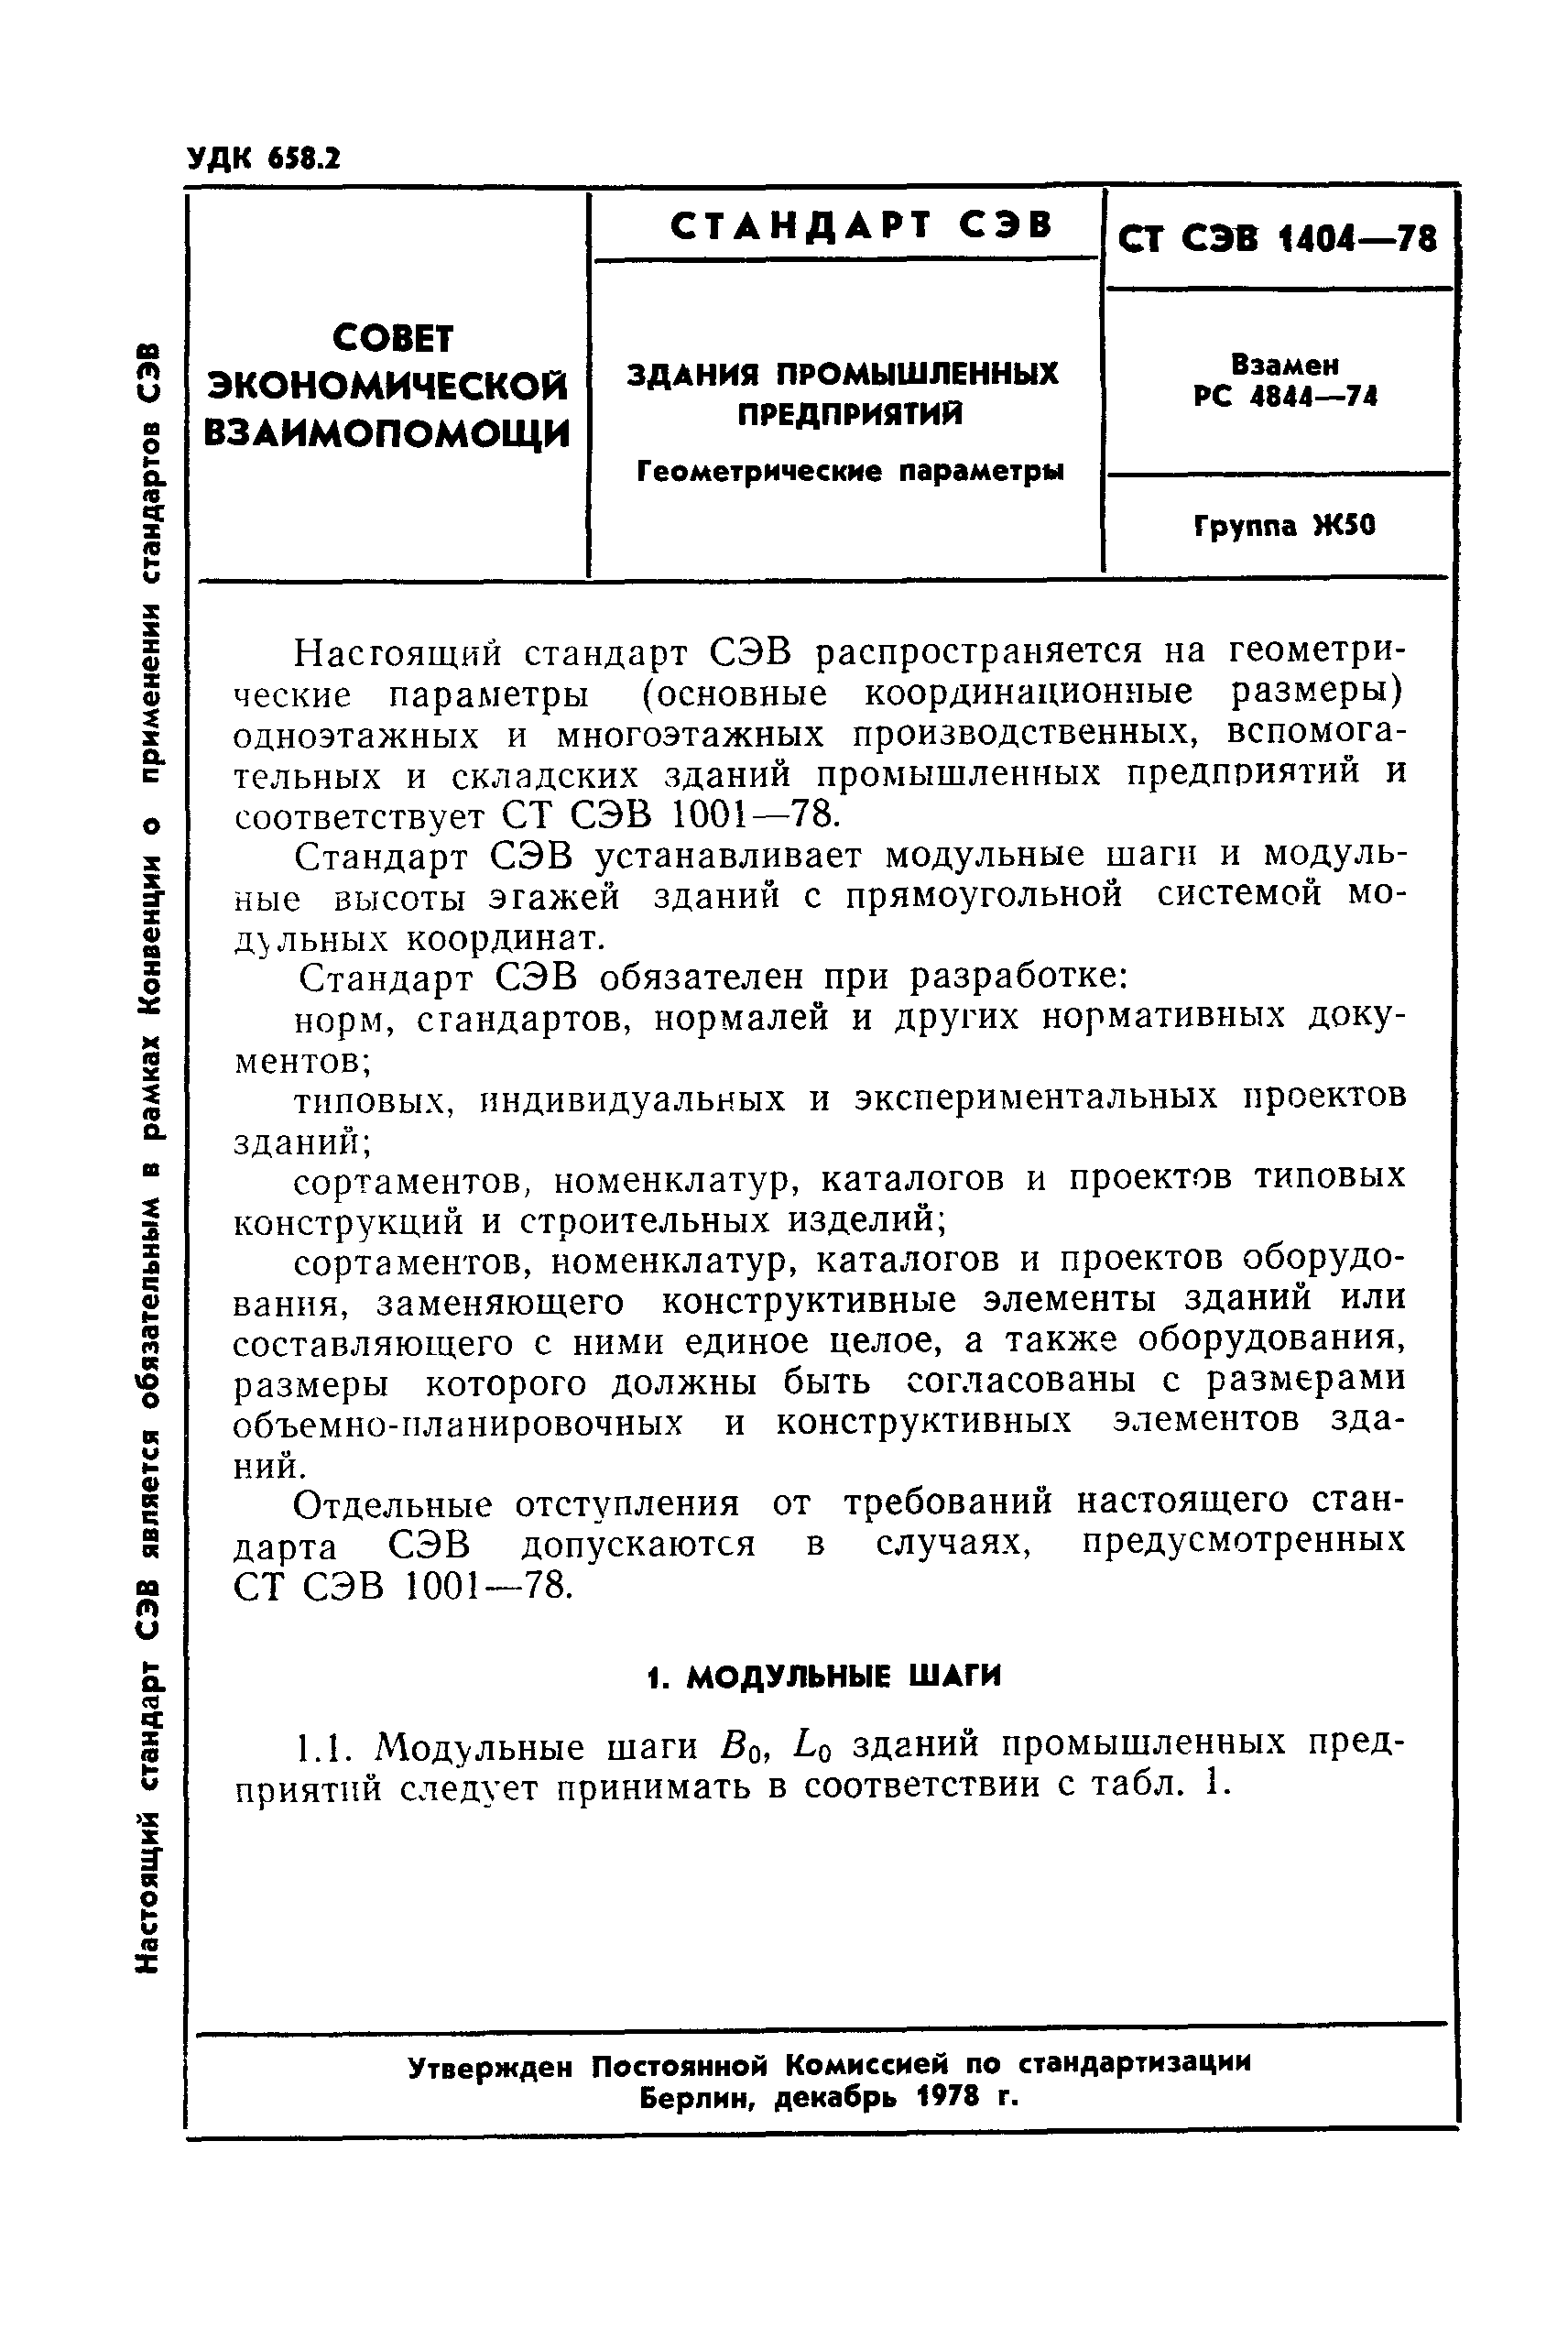 СТ СЭВ 1404-74